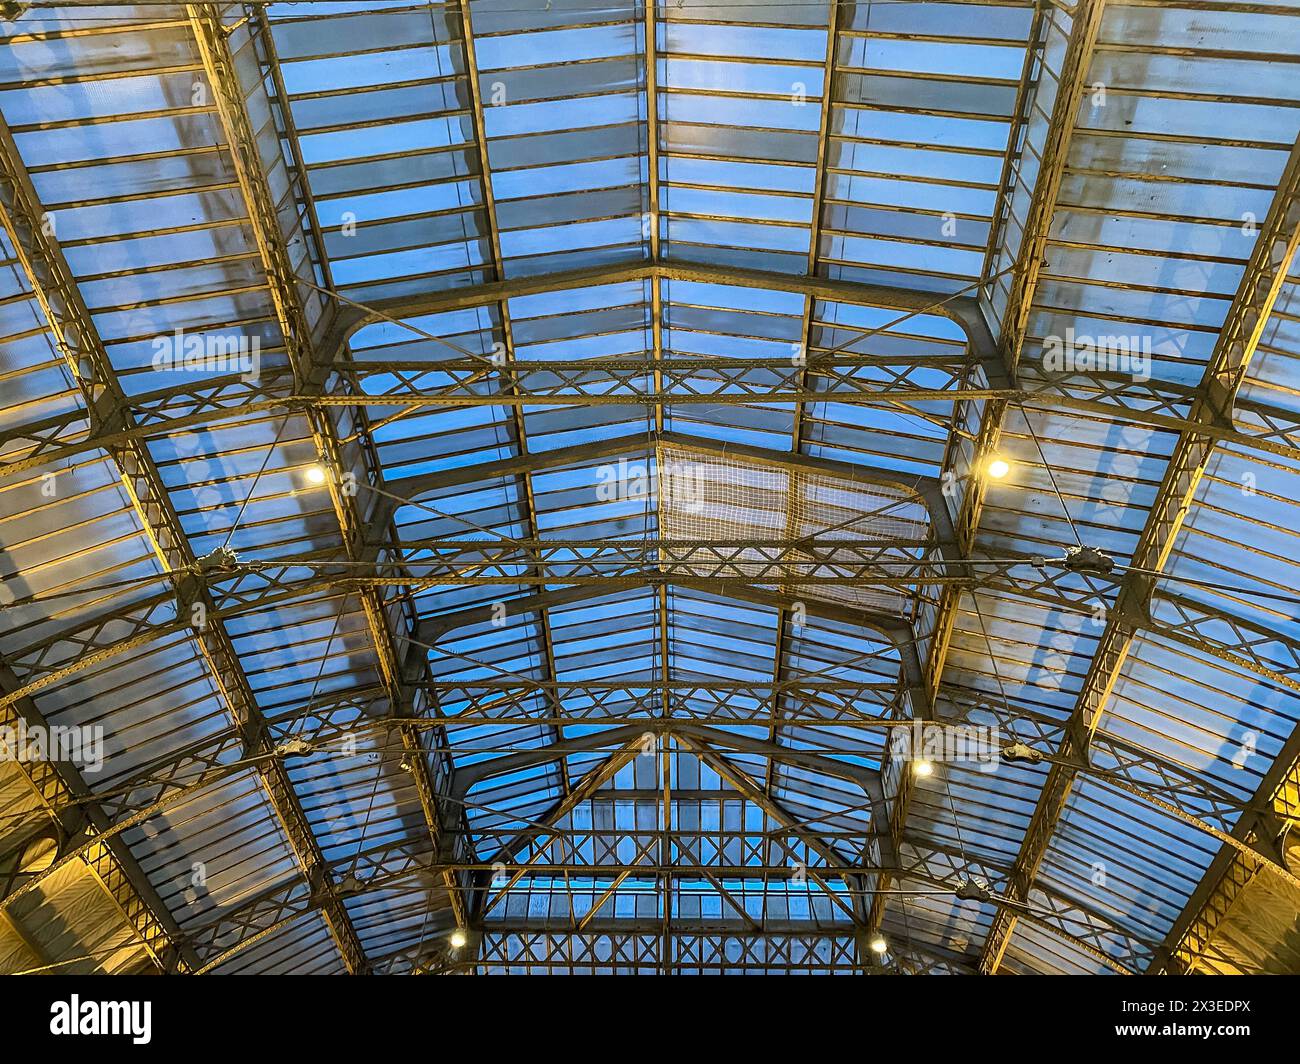 Berühmtes Dach des Gare de l'Est, Paris Frankreich - historische Eisenbahnarchitektur Stockfoto